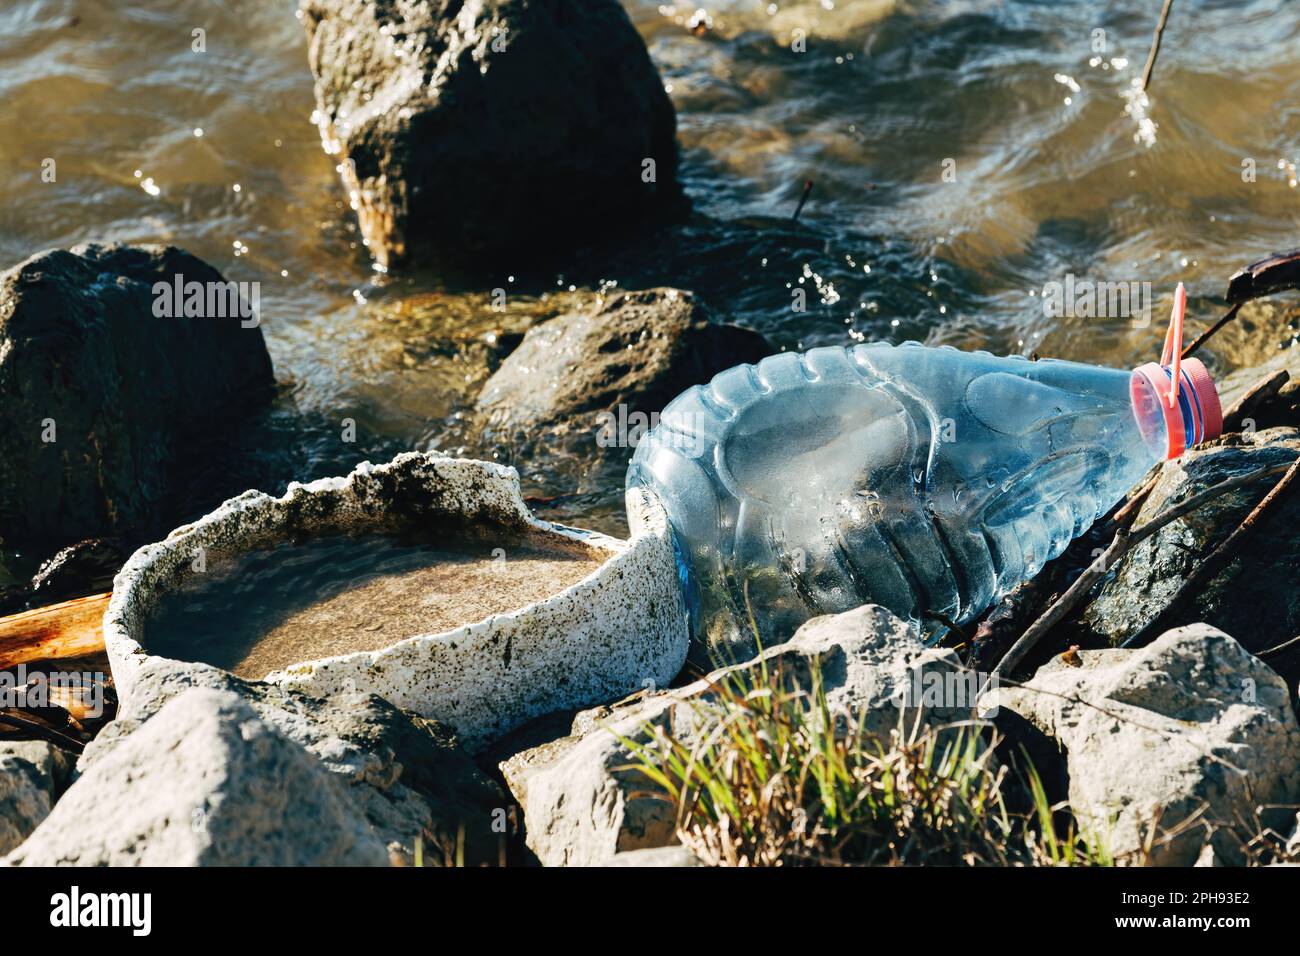 Inquinamento dell'acqua fluviale come danno ambientale, bottiglie di plastica che sparpagliano l'acqua dolce, vista ad angolo alto Foto Stock